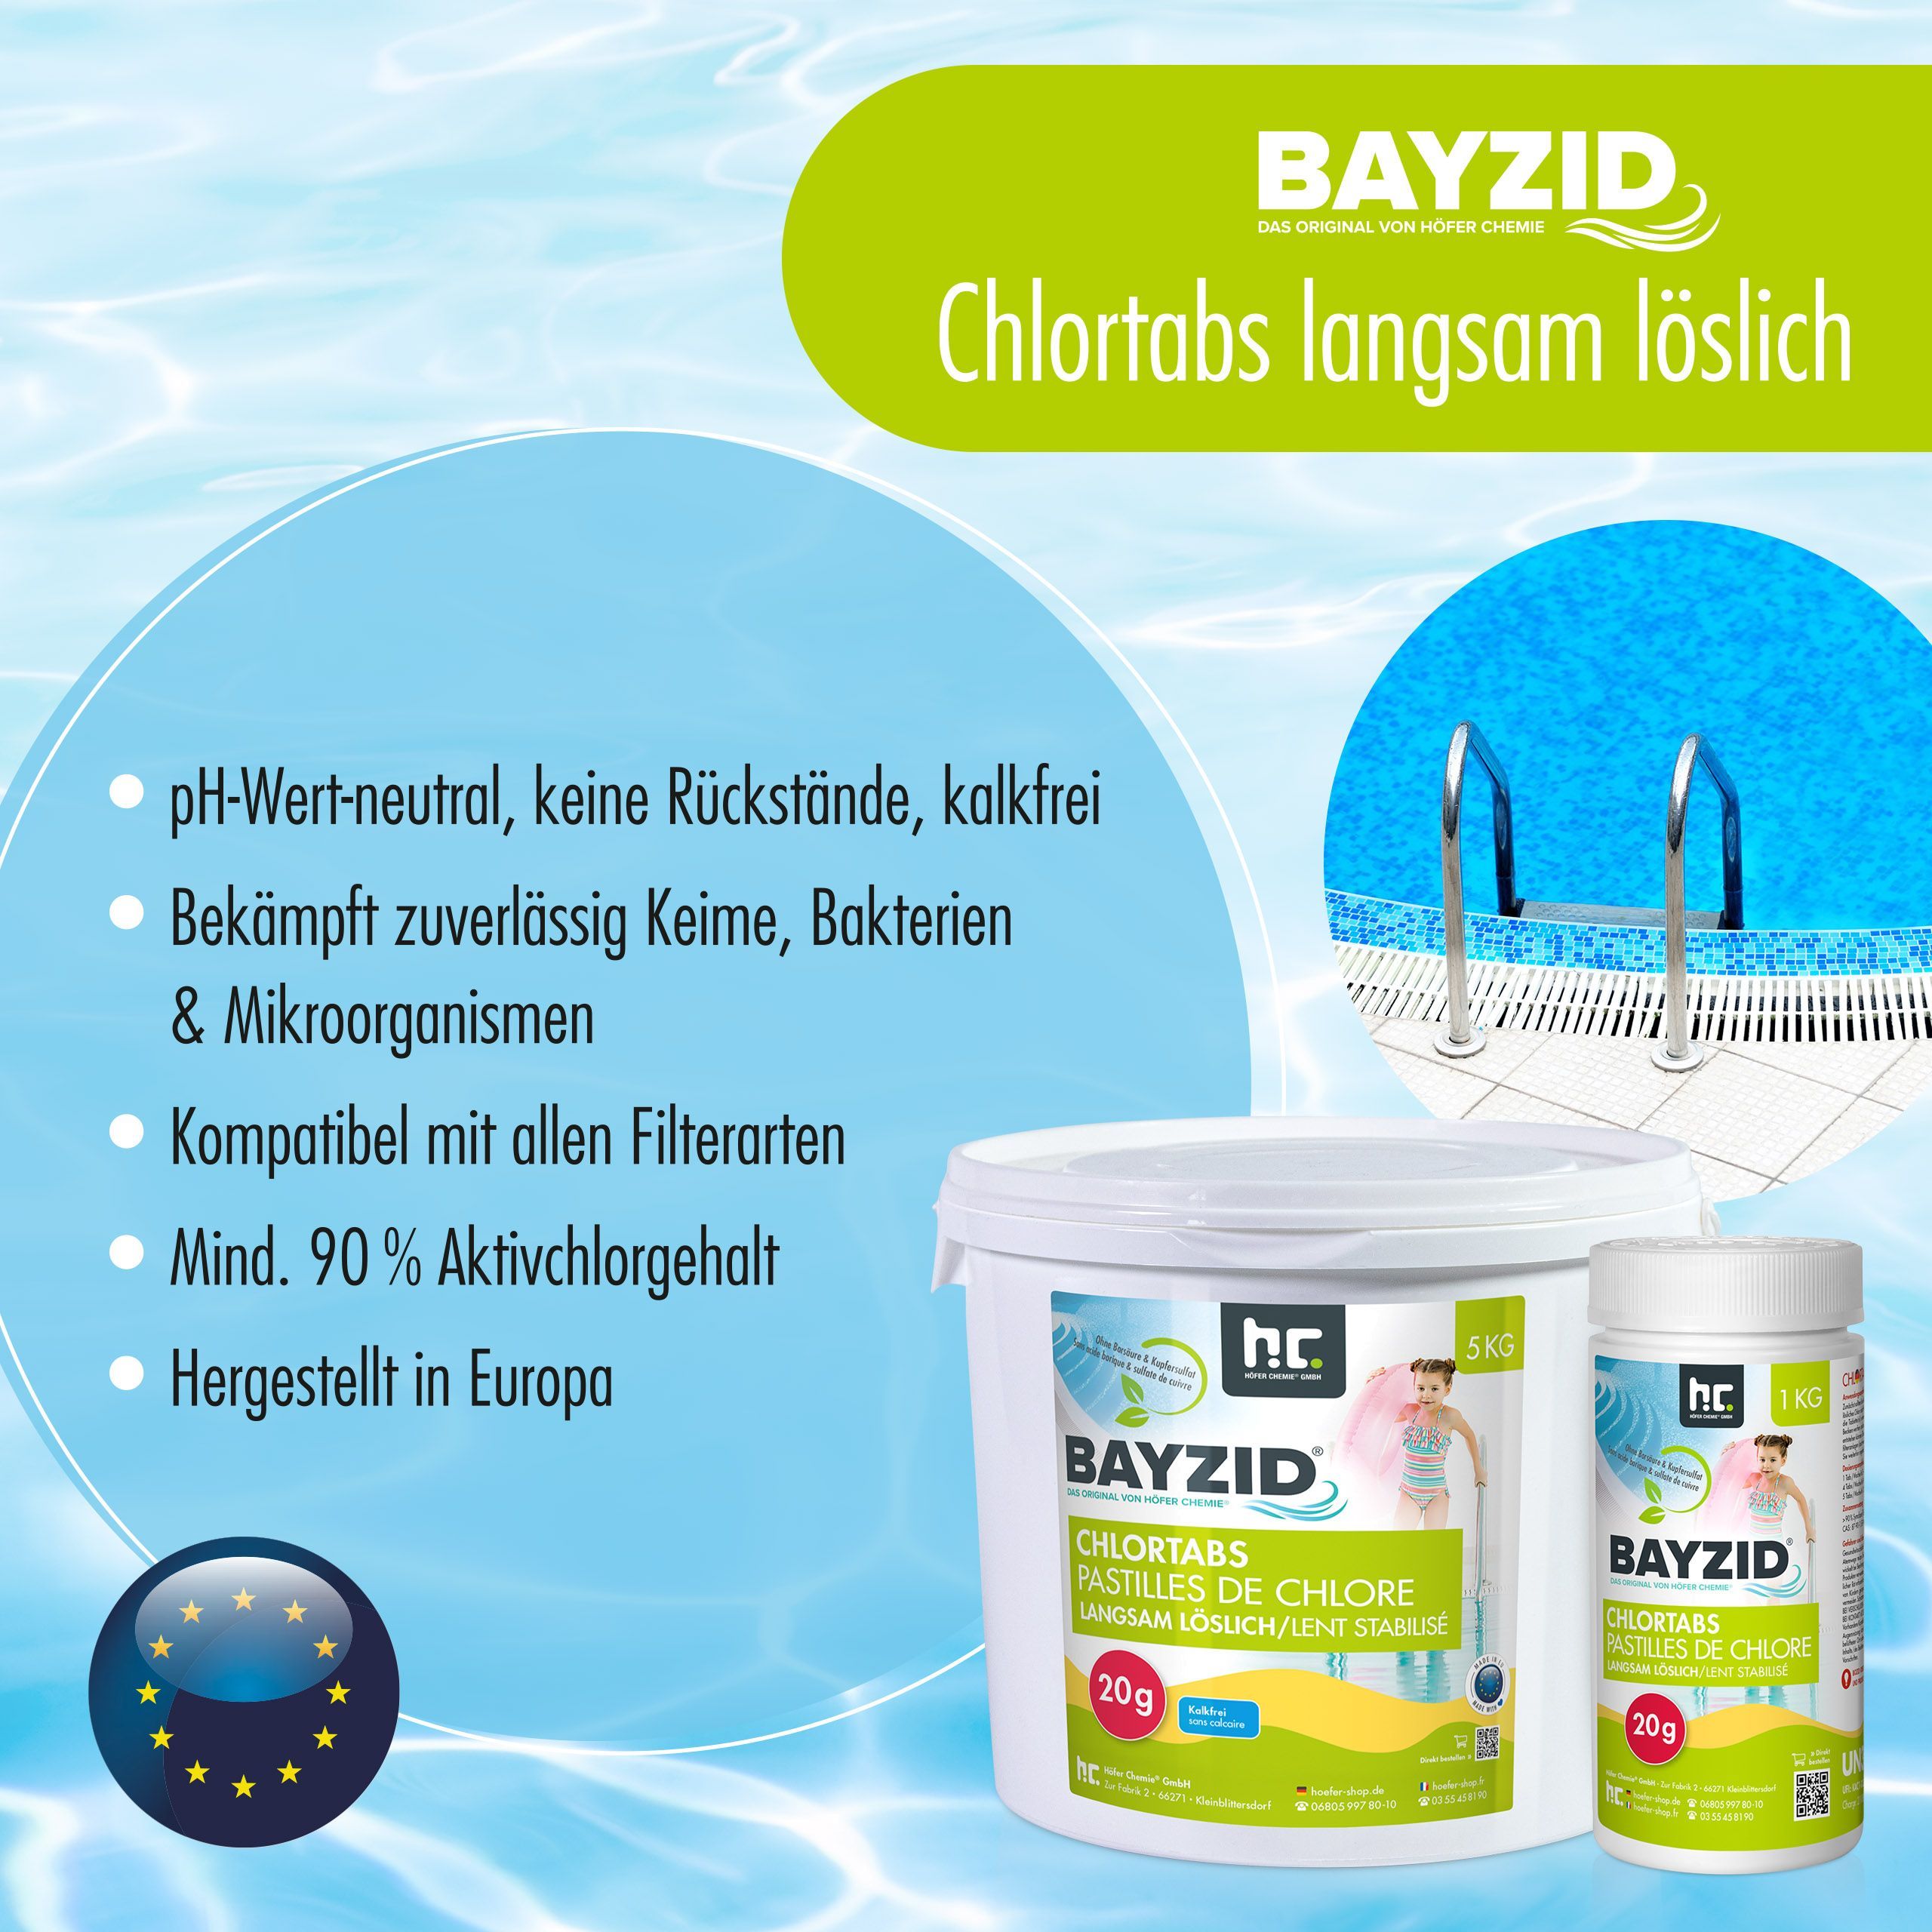 5 kg BAYZID® Pastilles de chlore lent 20g